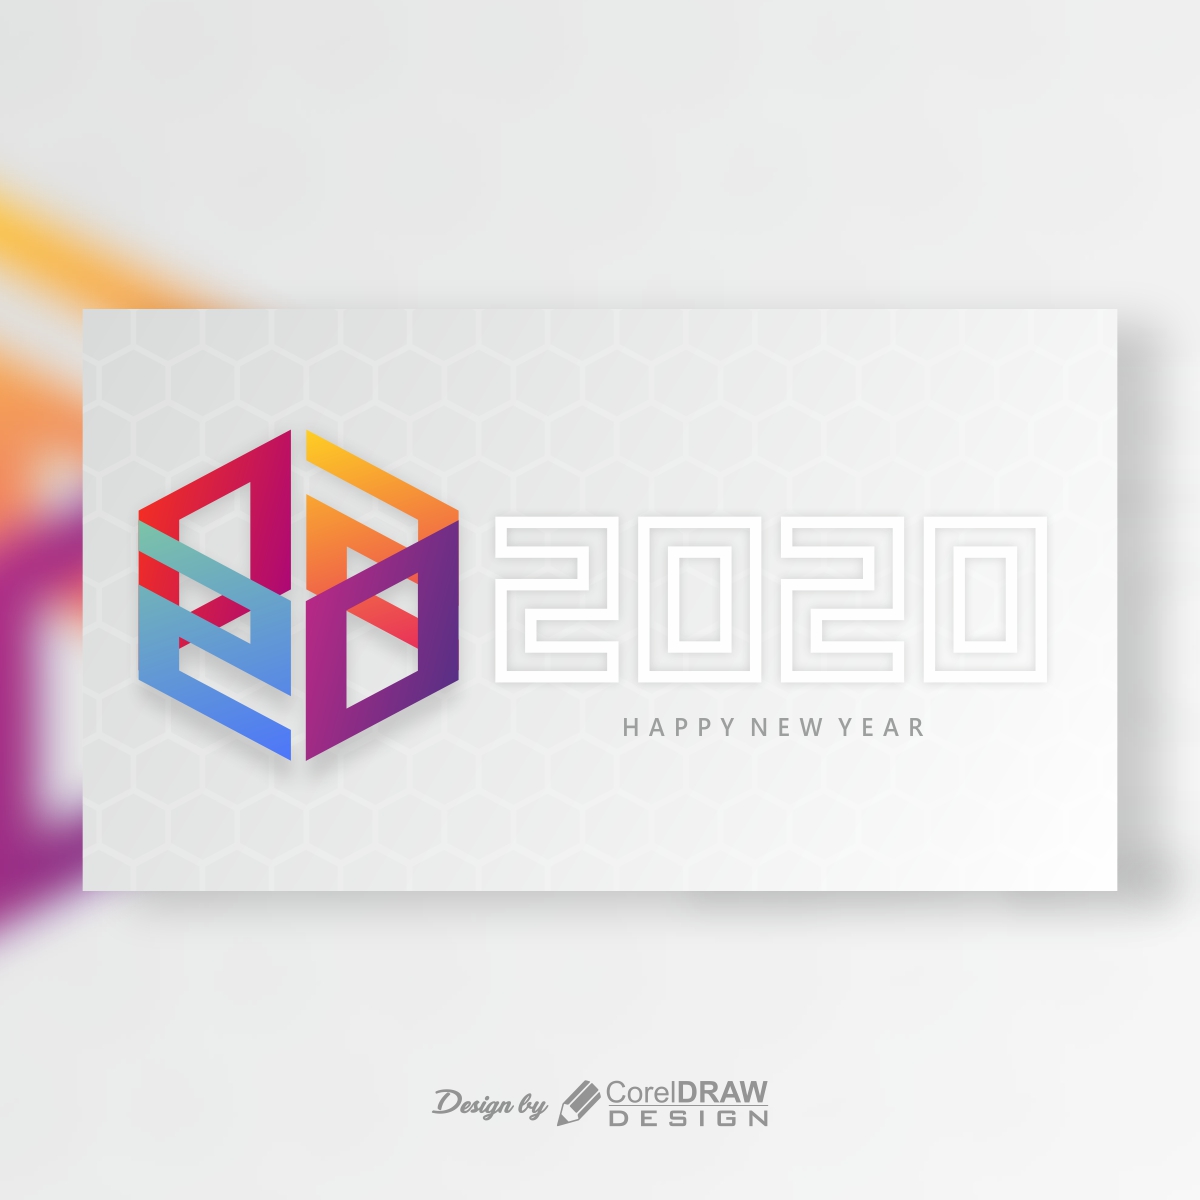 Happy New Year Hexa Shape 2020